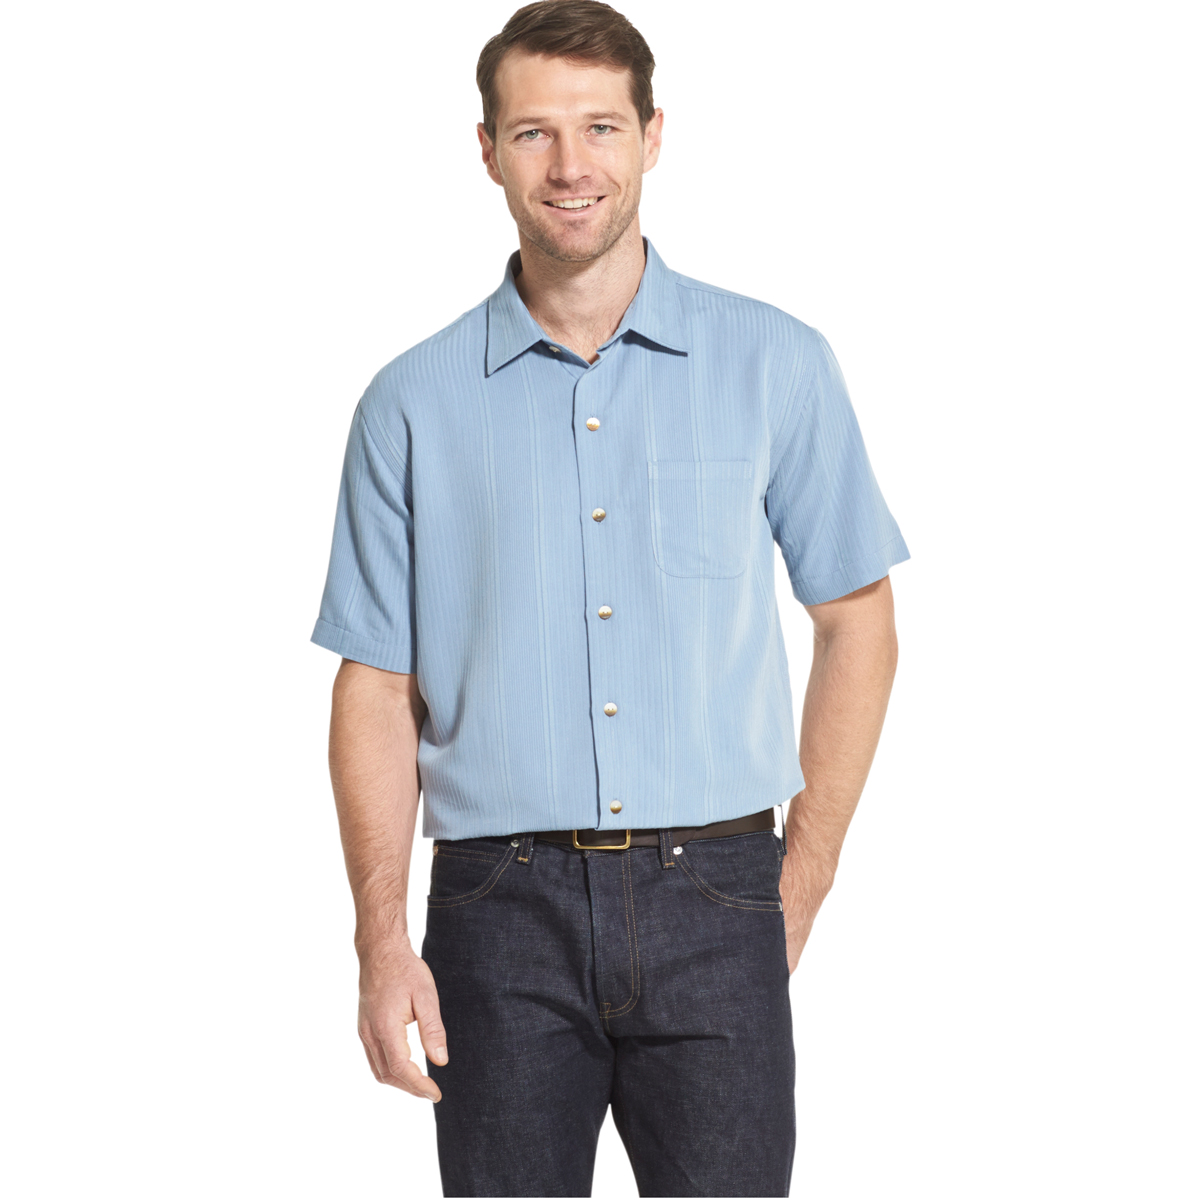 Van Heusen Men's Air Non-Iron Short-Sleeve Shirt - Blue, XXL